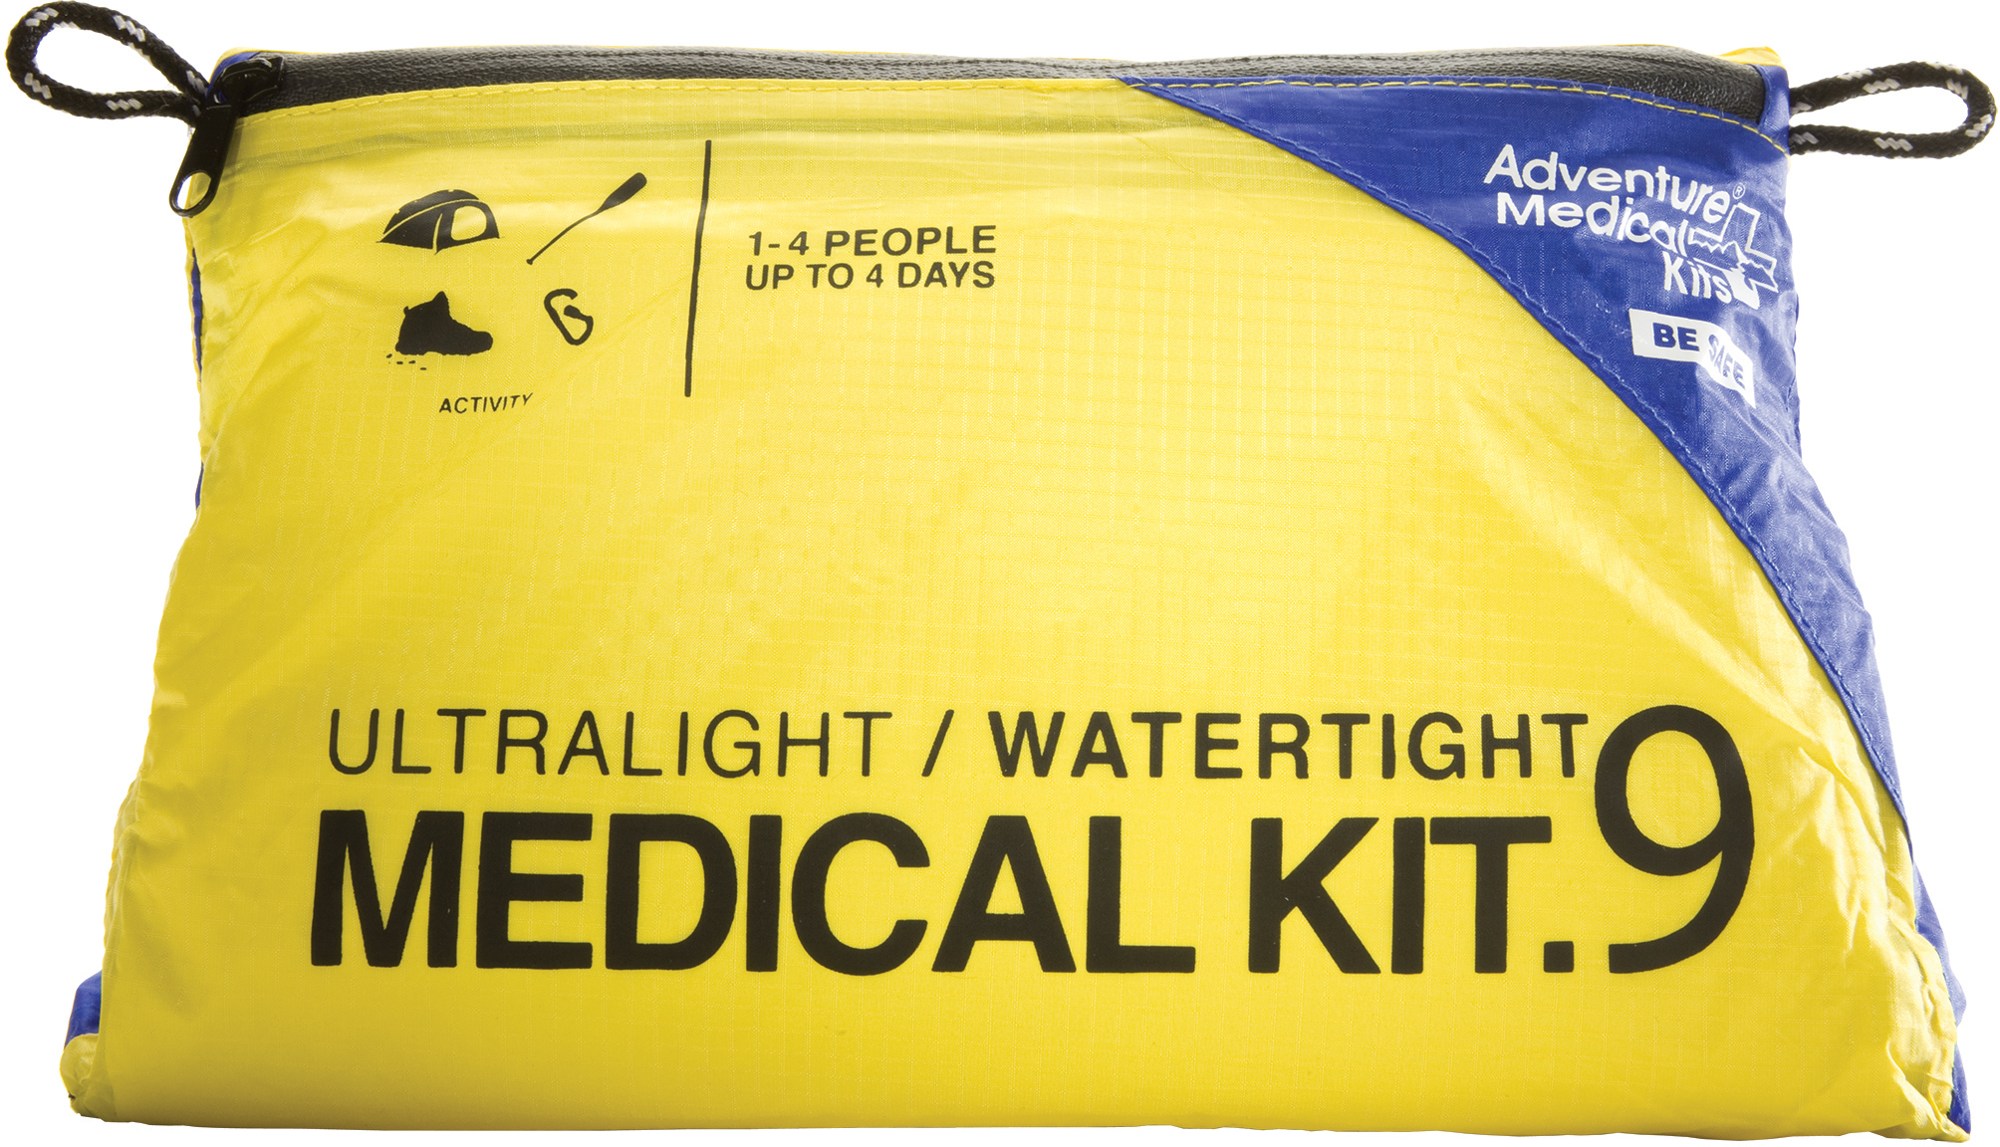 Сверхлегкая/водонепроницаемая аптечка первой помощи калибра .9 Adventure Medical Kits